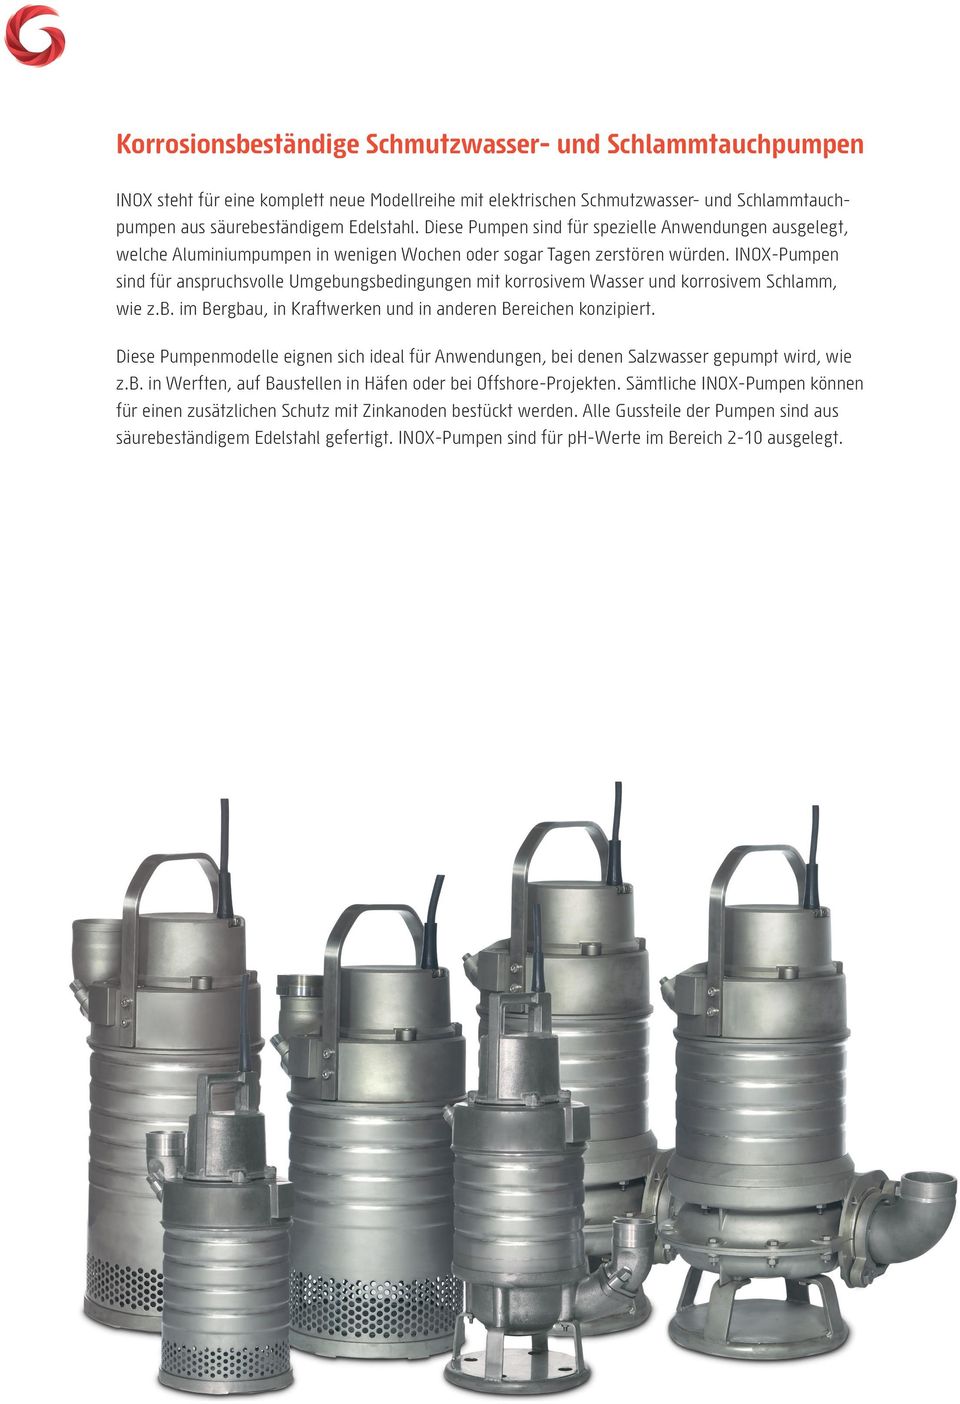 INOX-Pumpen sind für anspruchsvolle Umgebungsbedingungen mit korrosivem Wasser und korrosivem Schlamm, wie z.b. im Bergbau, in Kraftwerken und in anderen Bereichen konzipiert.